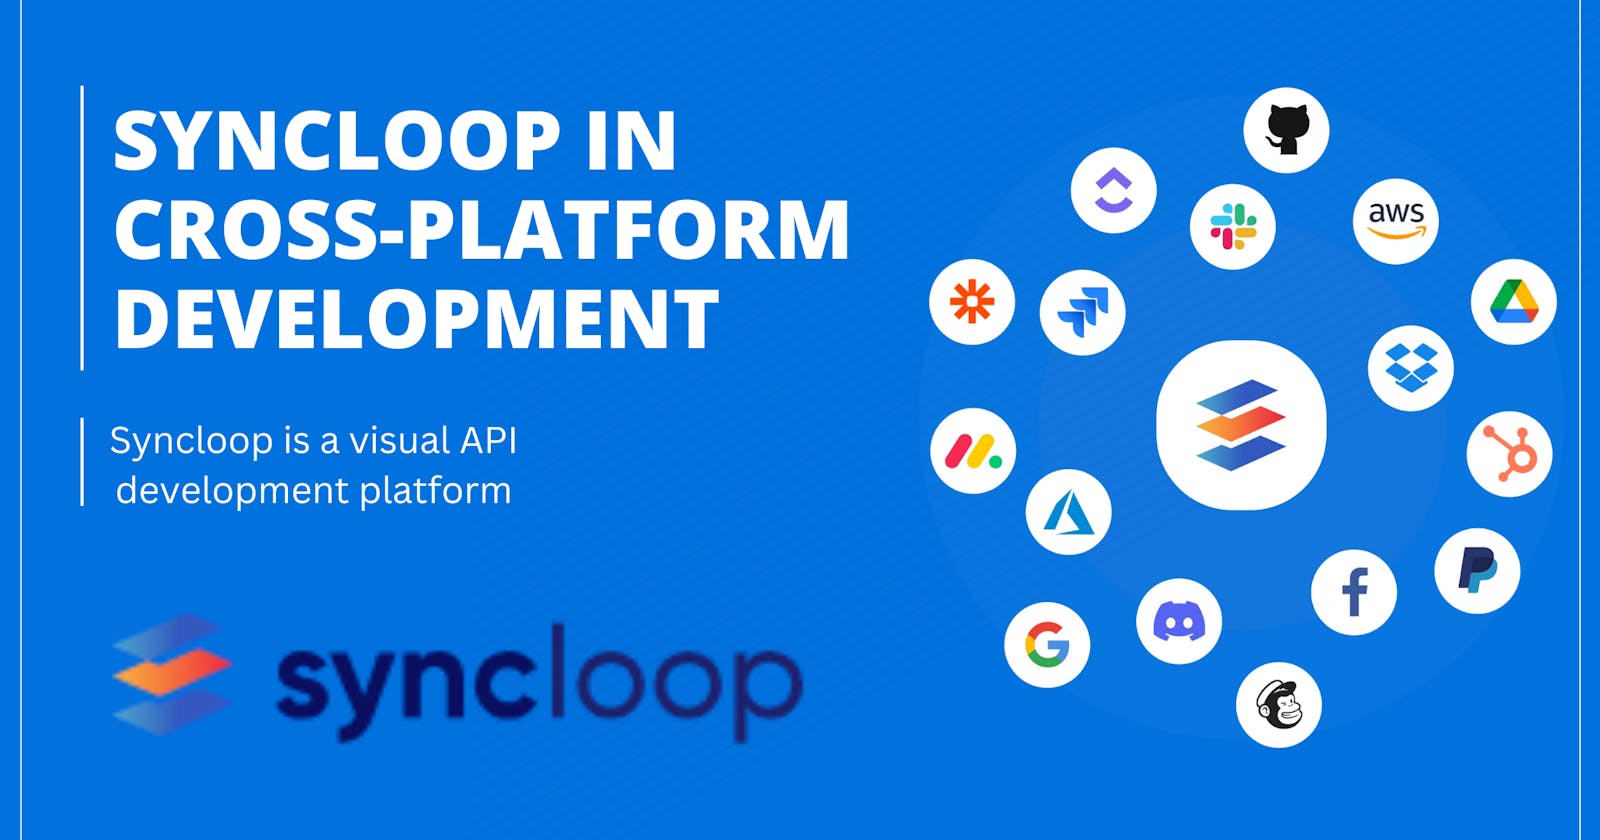 Syncloop in Cross-Platform Development